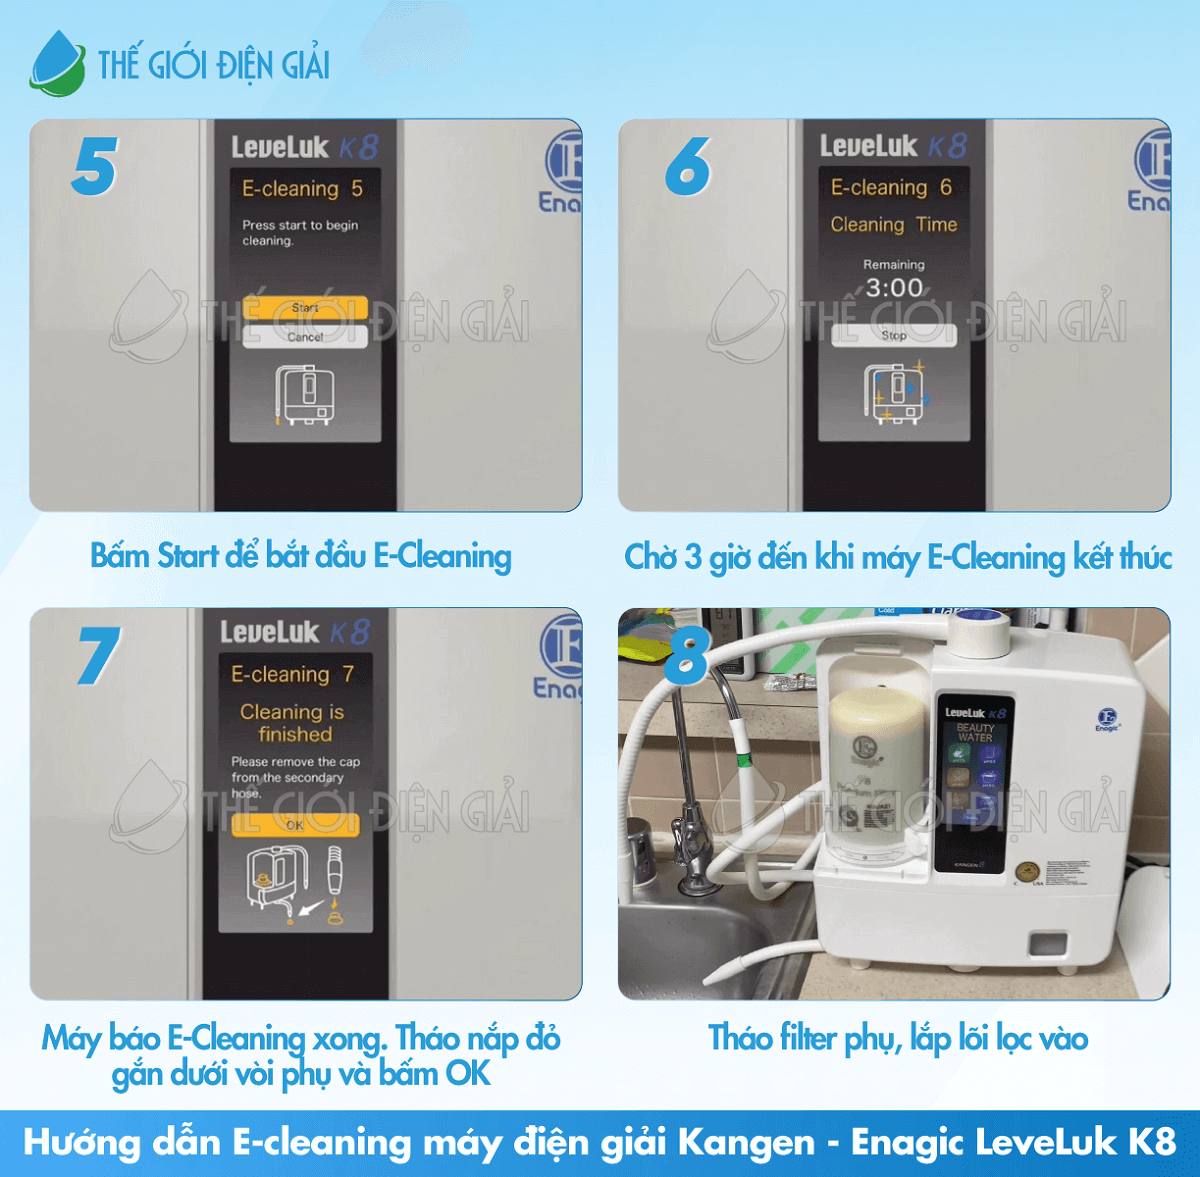 Hướng dẫn E-Cleaning máy điện giải Kangen LeveLuk K8 các bước từ 5 đến 8